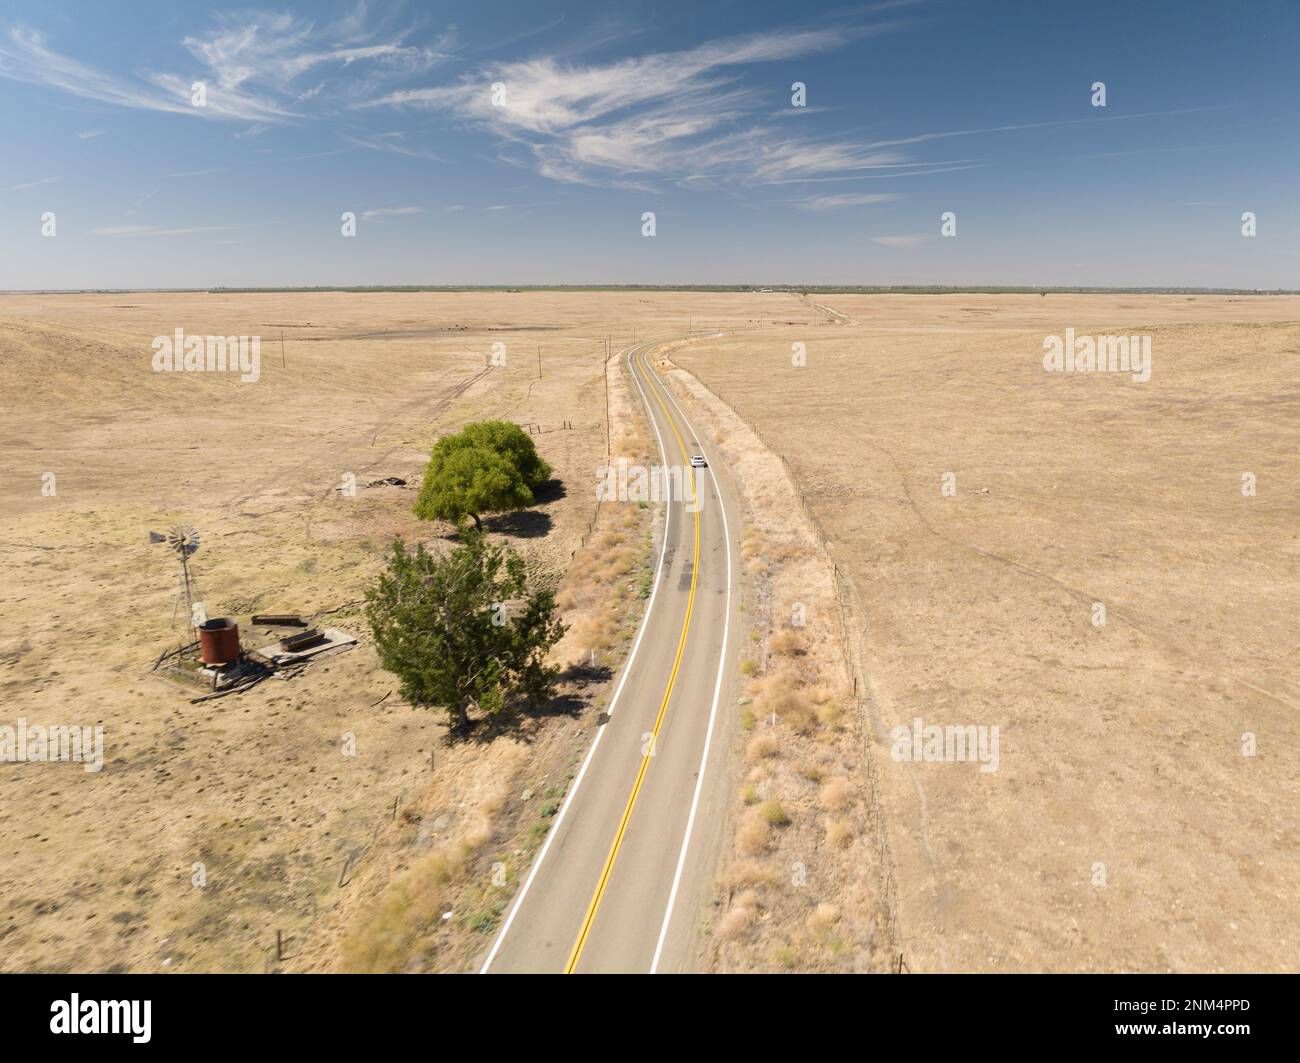 Vastes prairies ouvertes avec une route au milieu avec arbre isolé dans la ferme pendant la journée avec ciel nuageux, terres agricoles rurales et prairies aux États-Unis Banque D'Images